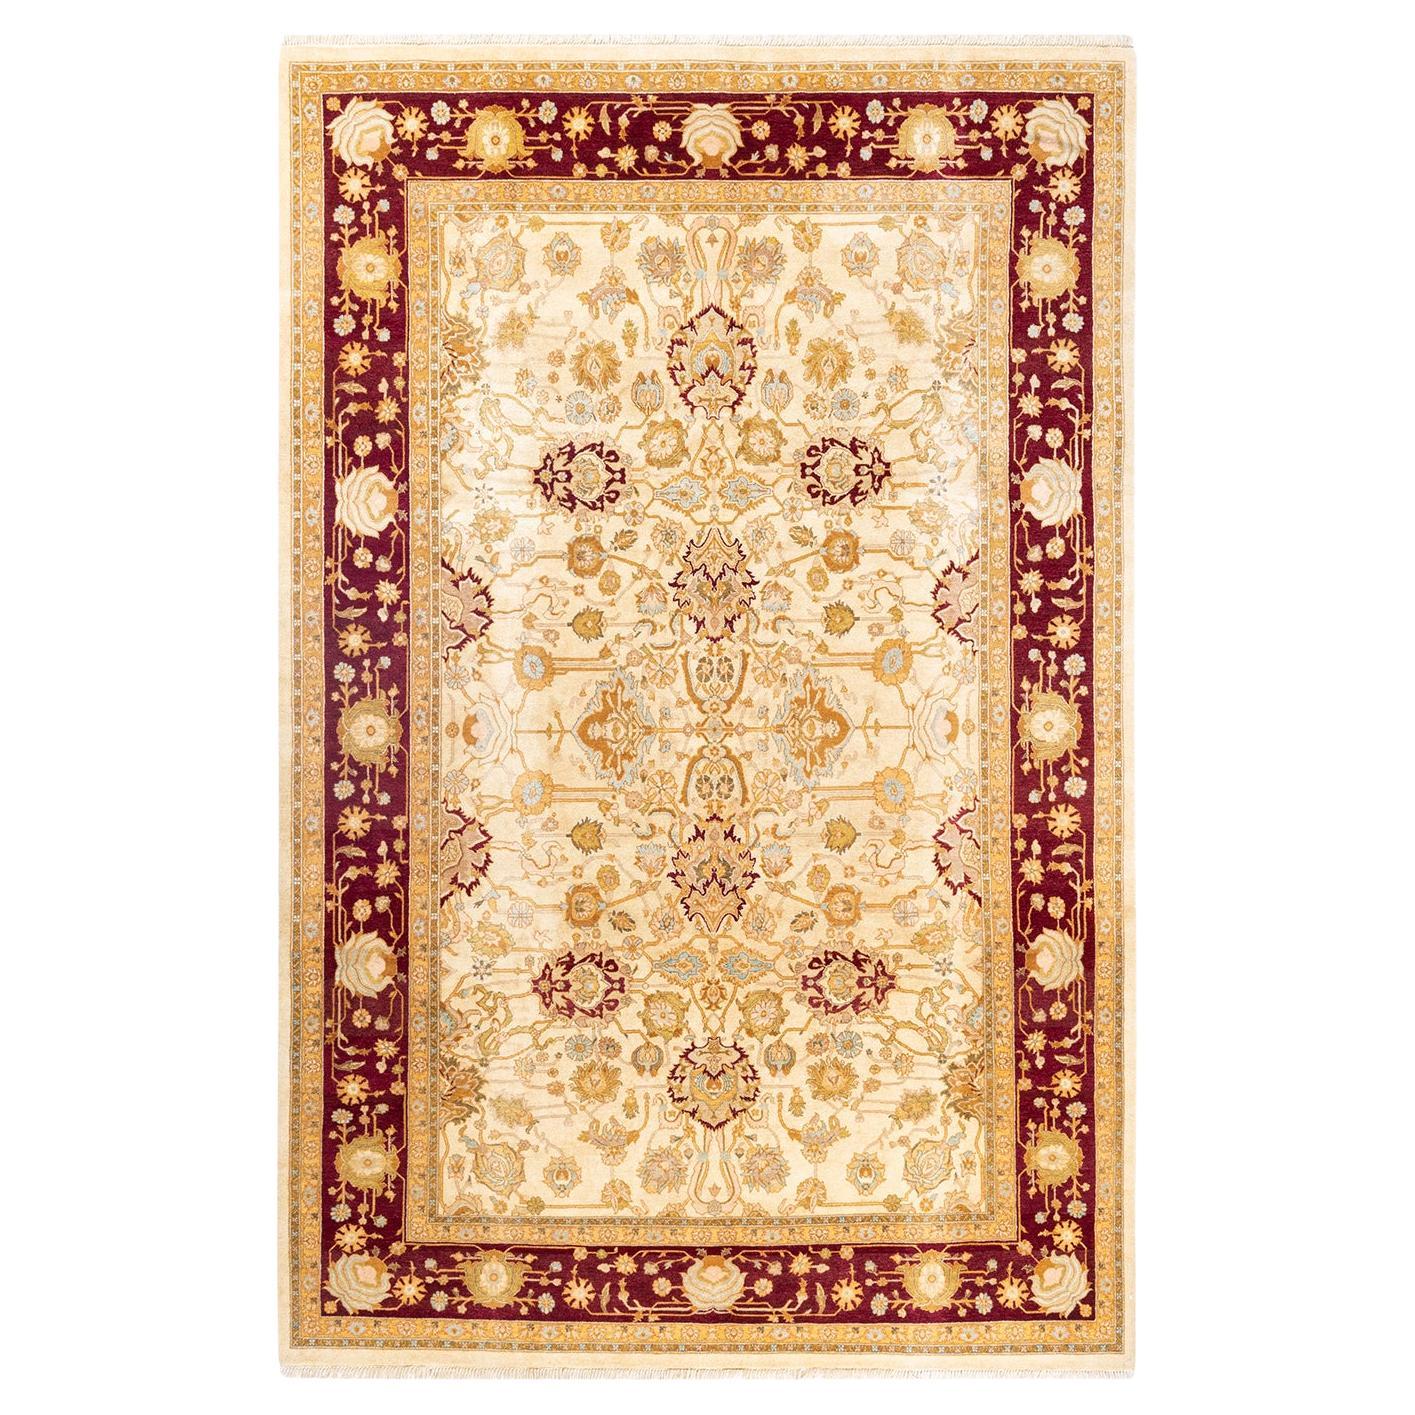 Handgeknüpfter orientalischer Mogul elfenbeinfarbener Teppich in Elfenbein, Unikat